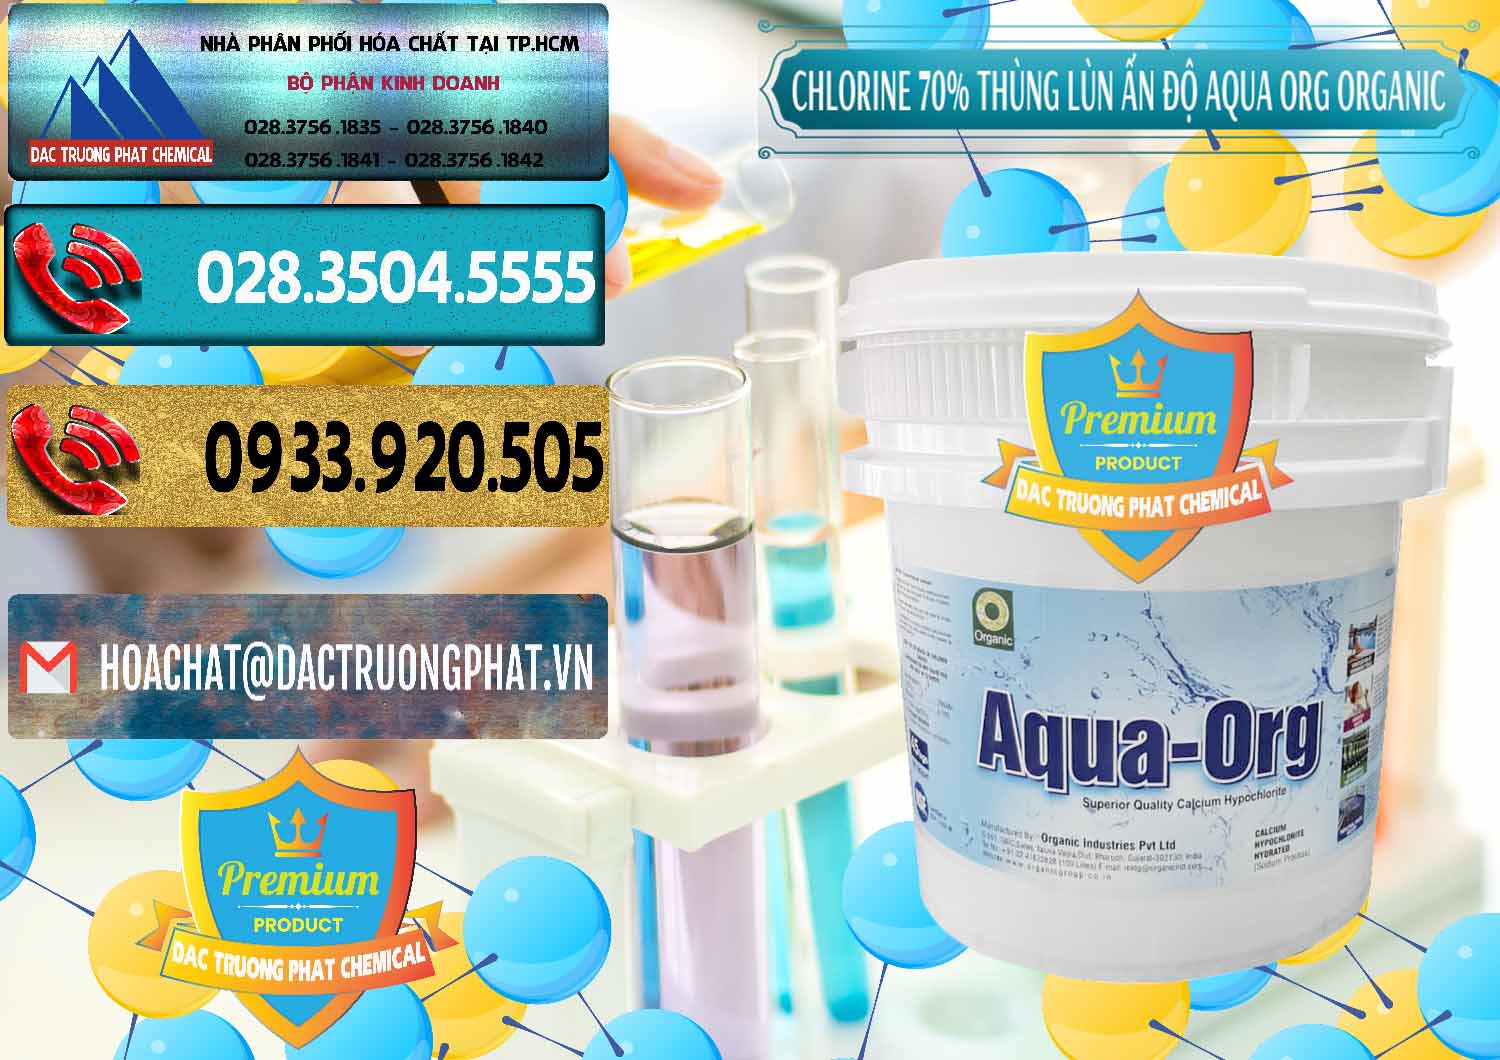 Cty cung cấp & bán Chlorine – Clorin 70% Thùng Lùn Ấn Độ Aqua ORG Organic India - 0212 - Công ty chuyên phân phối và bán hóa chất tại TP.HCM - hoachatdetnhuom.com